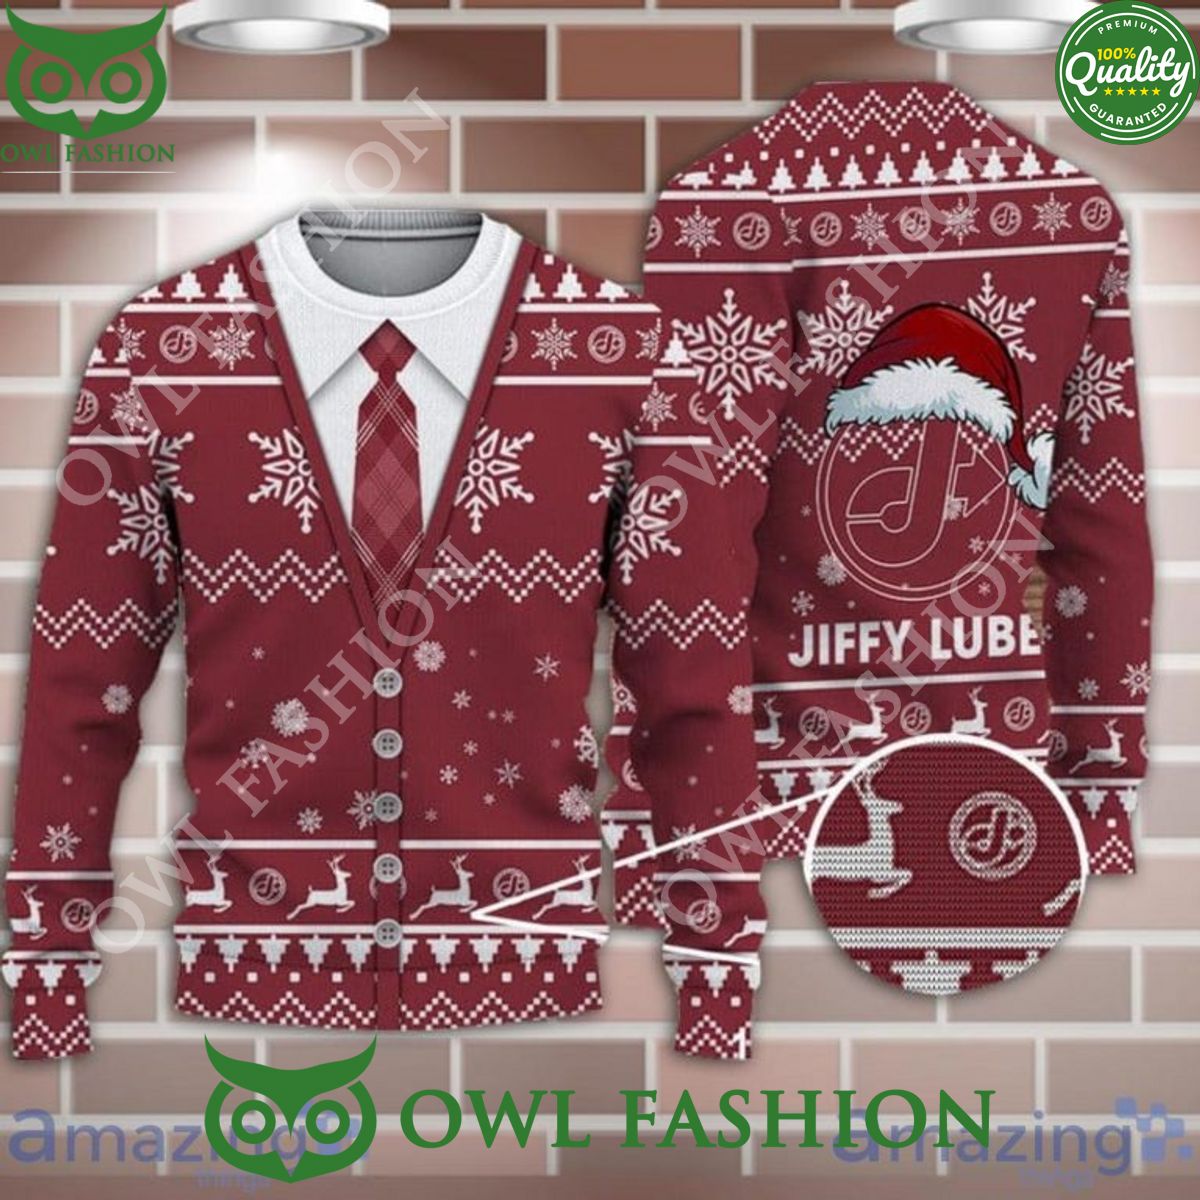 jiffy lube santahat pattern christmas ugly sweater jumper 1 DmVwe.jpg